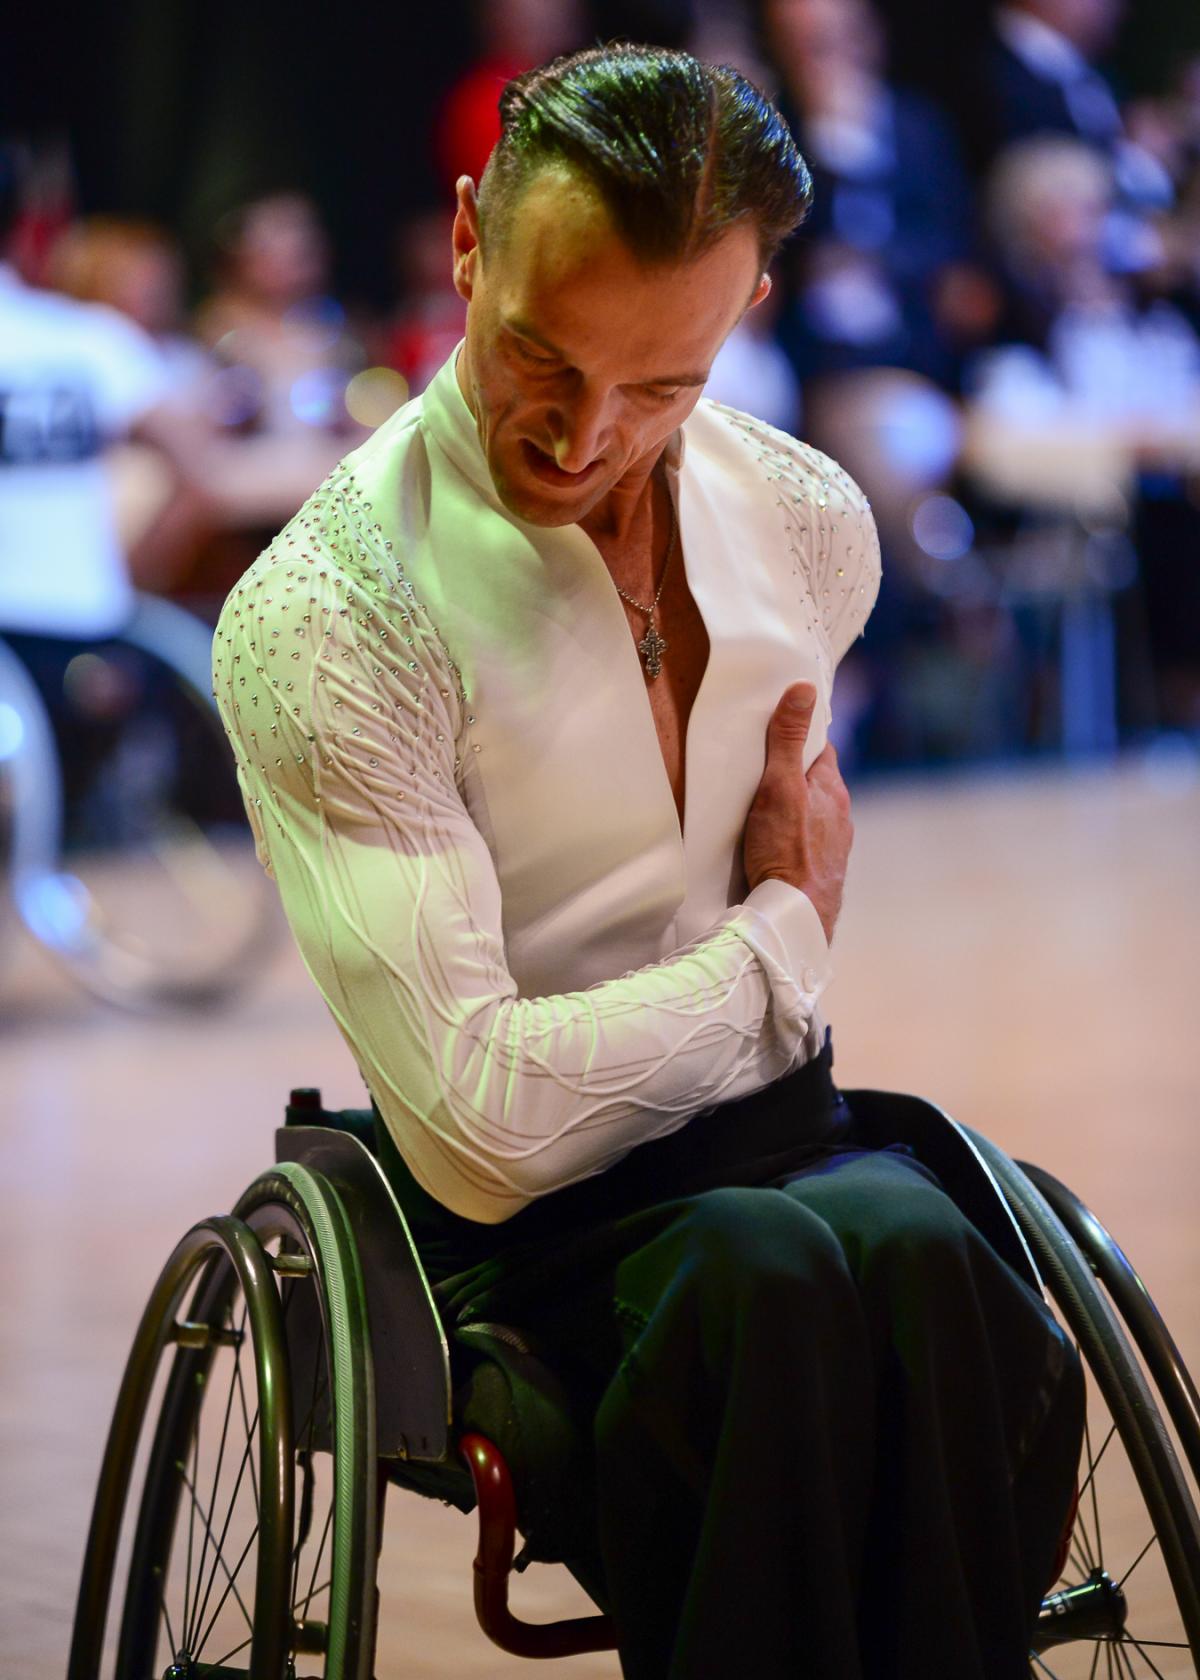 Male wheelchair dancer bows